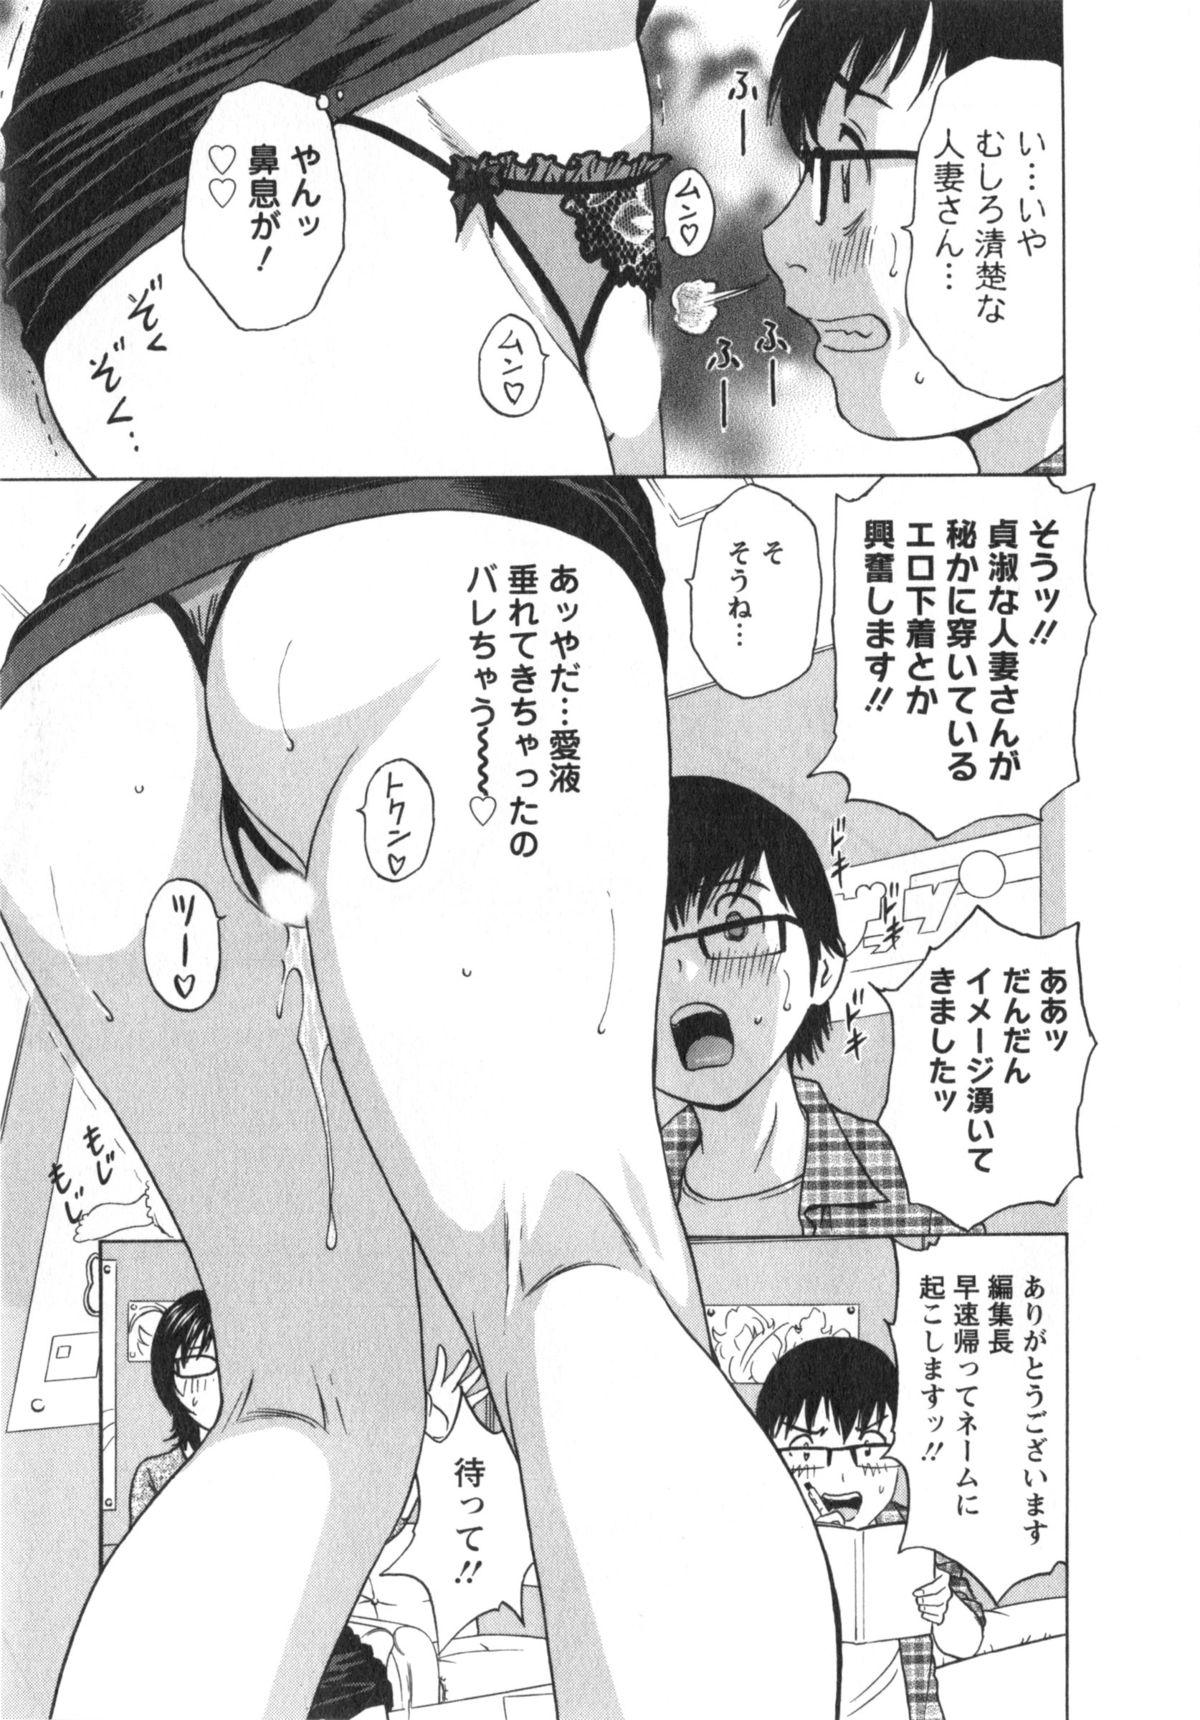 Manga no youna Hitozuma to no Hibi - Days with Married Women such as Comics. 159